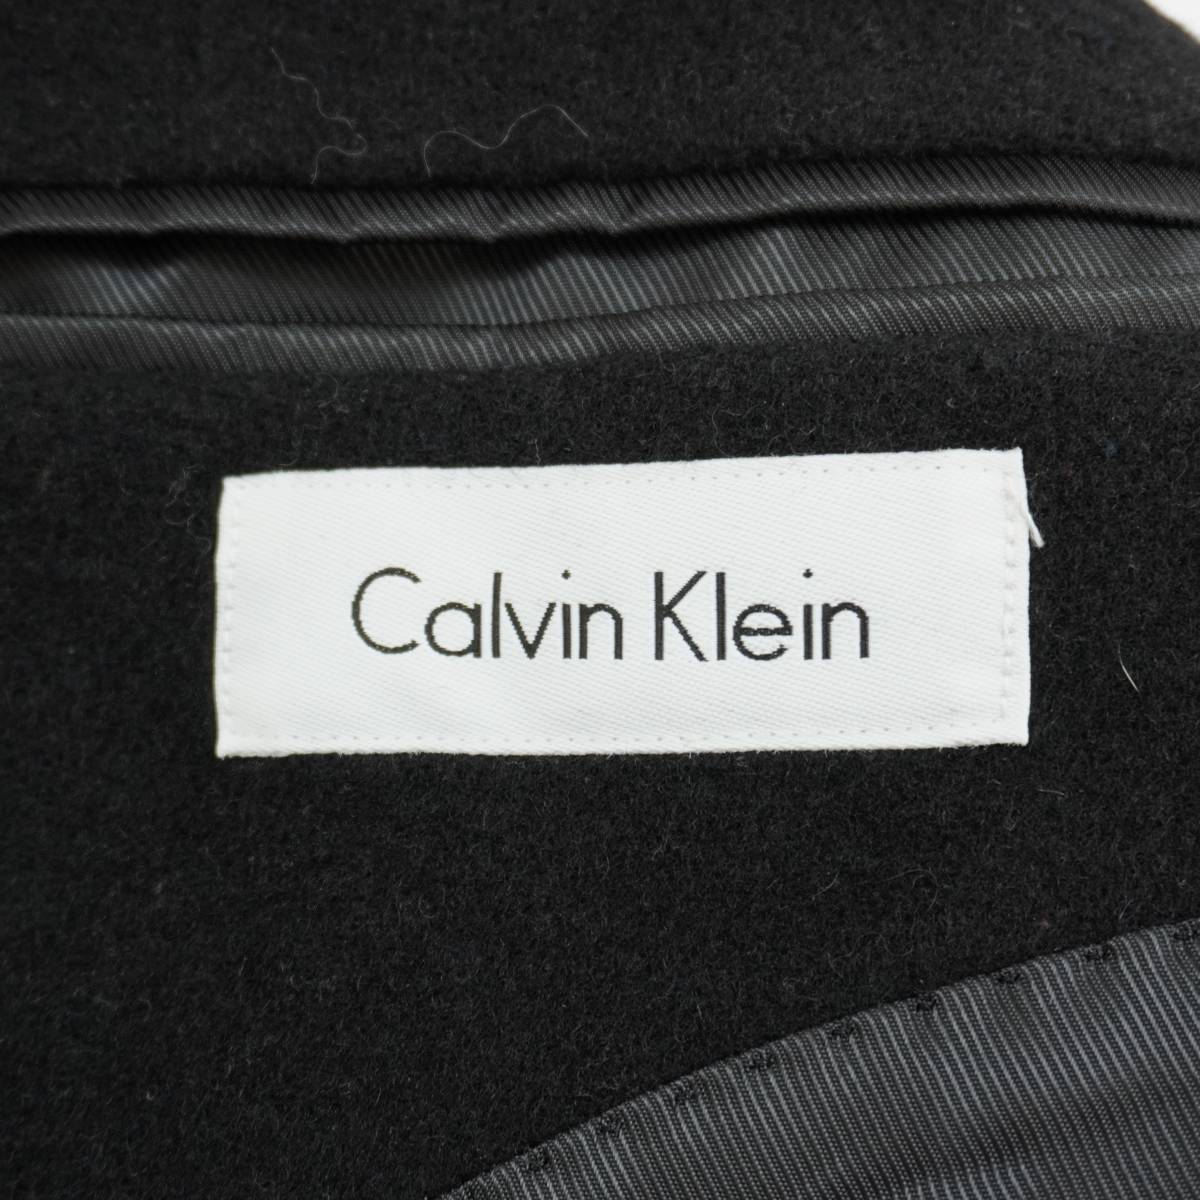 Calvin Klein Chester Coat 38S 304098 カルバンクライン チェスターコート カシミア